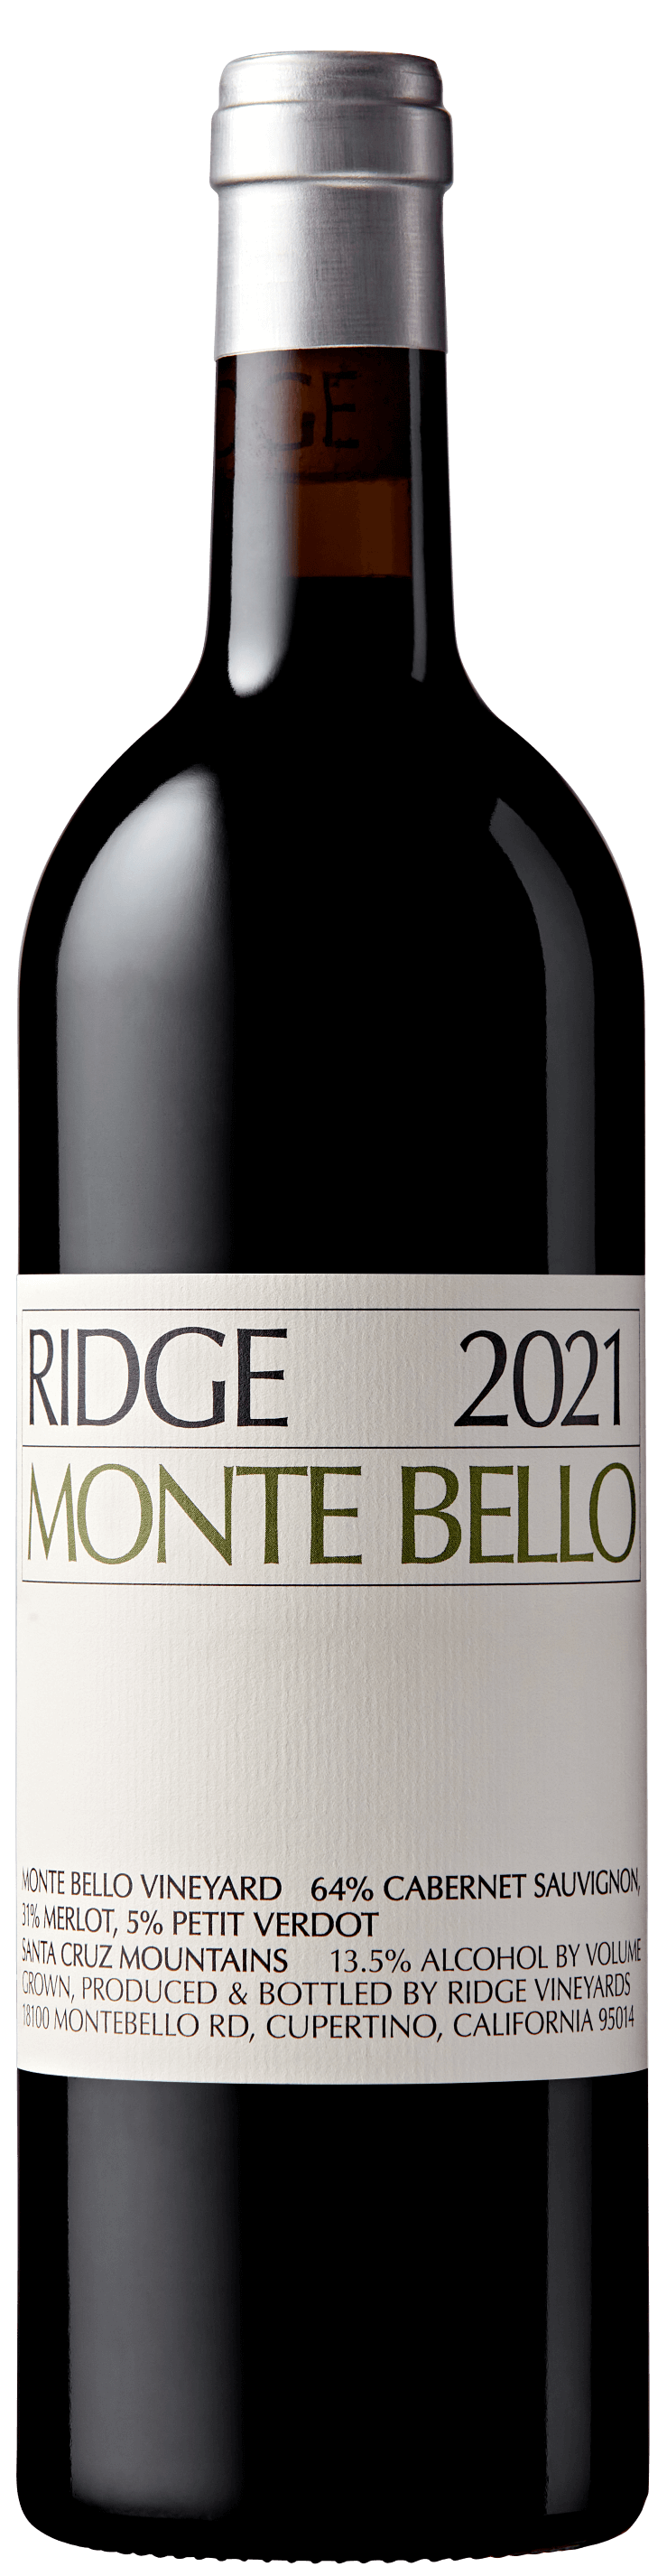 2021 Monte Bello